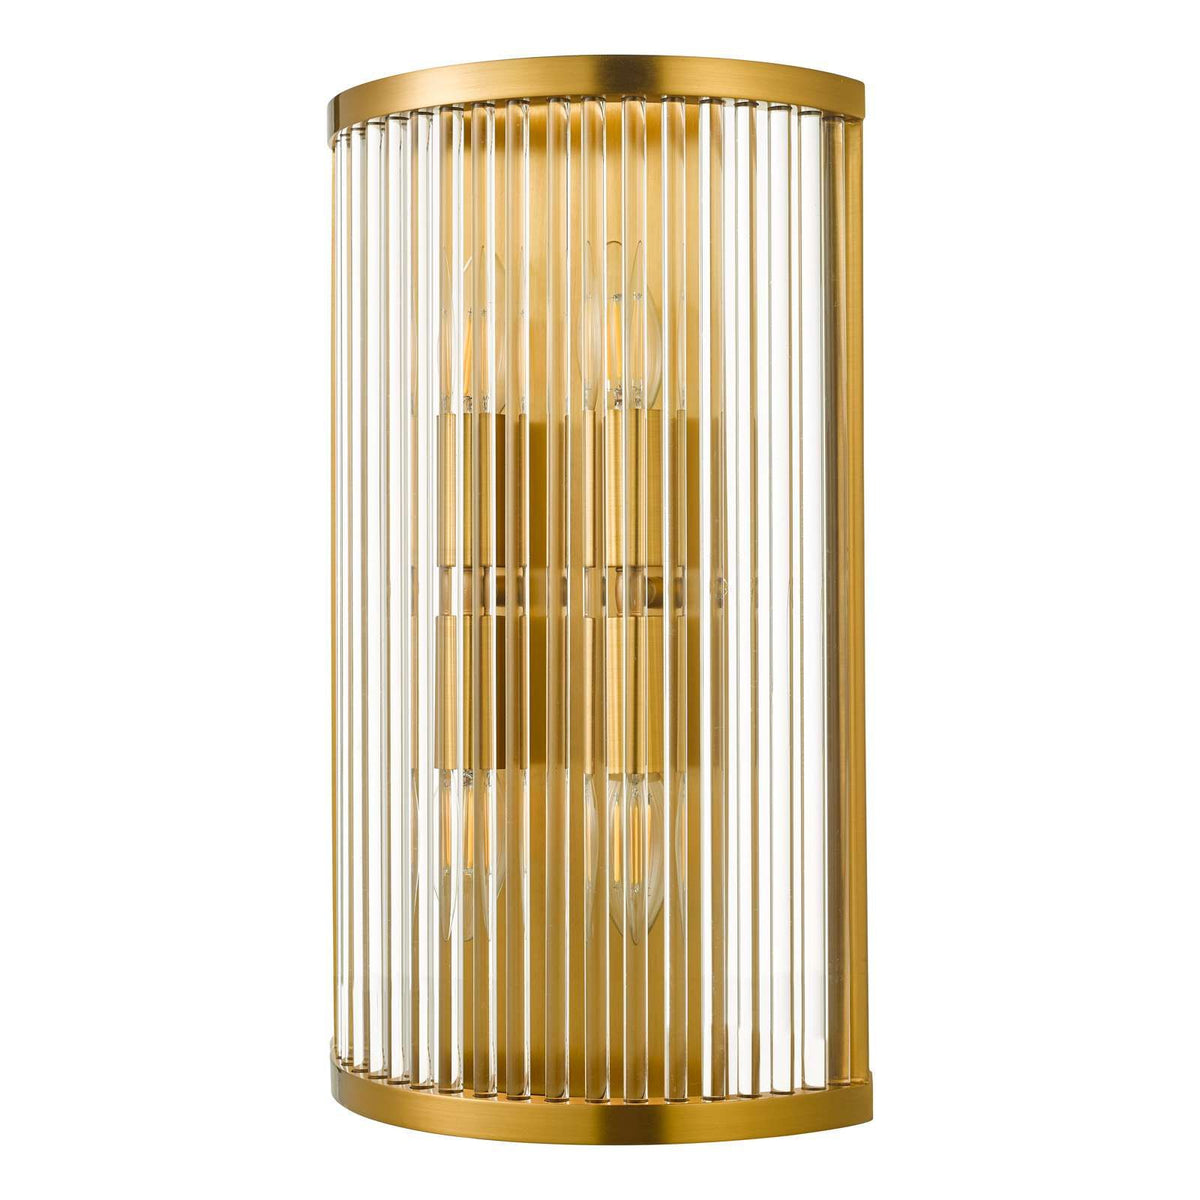 Eleanor 4 Light Wall Light Natural Brass Glass